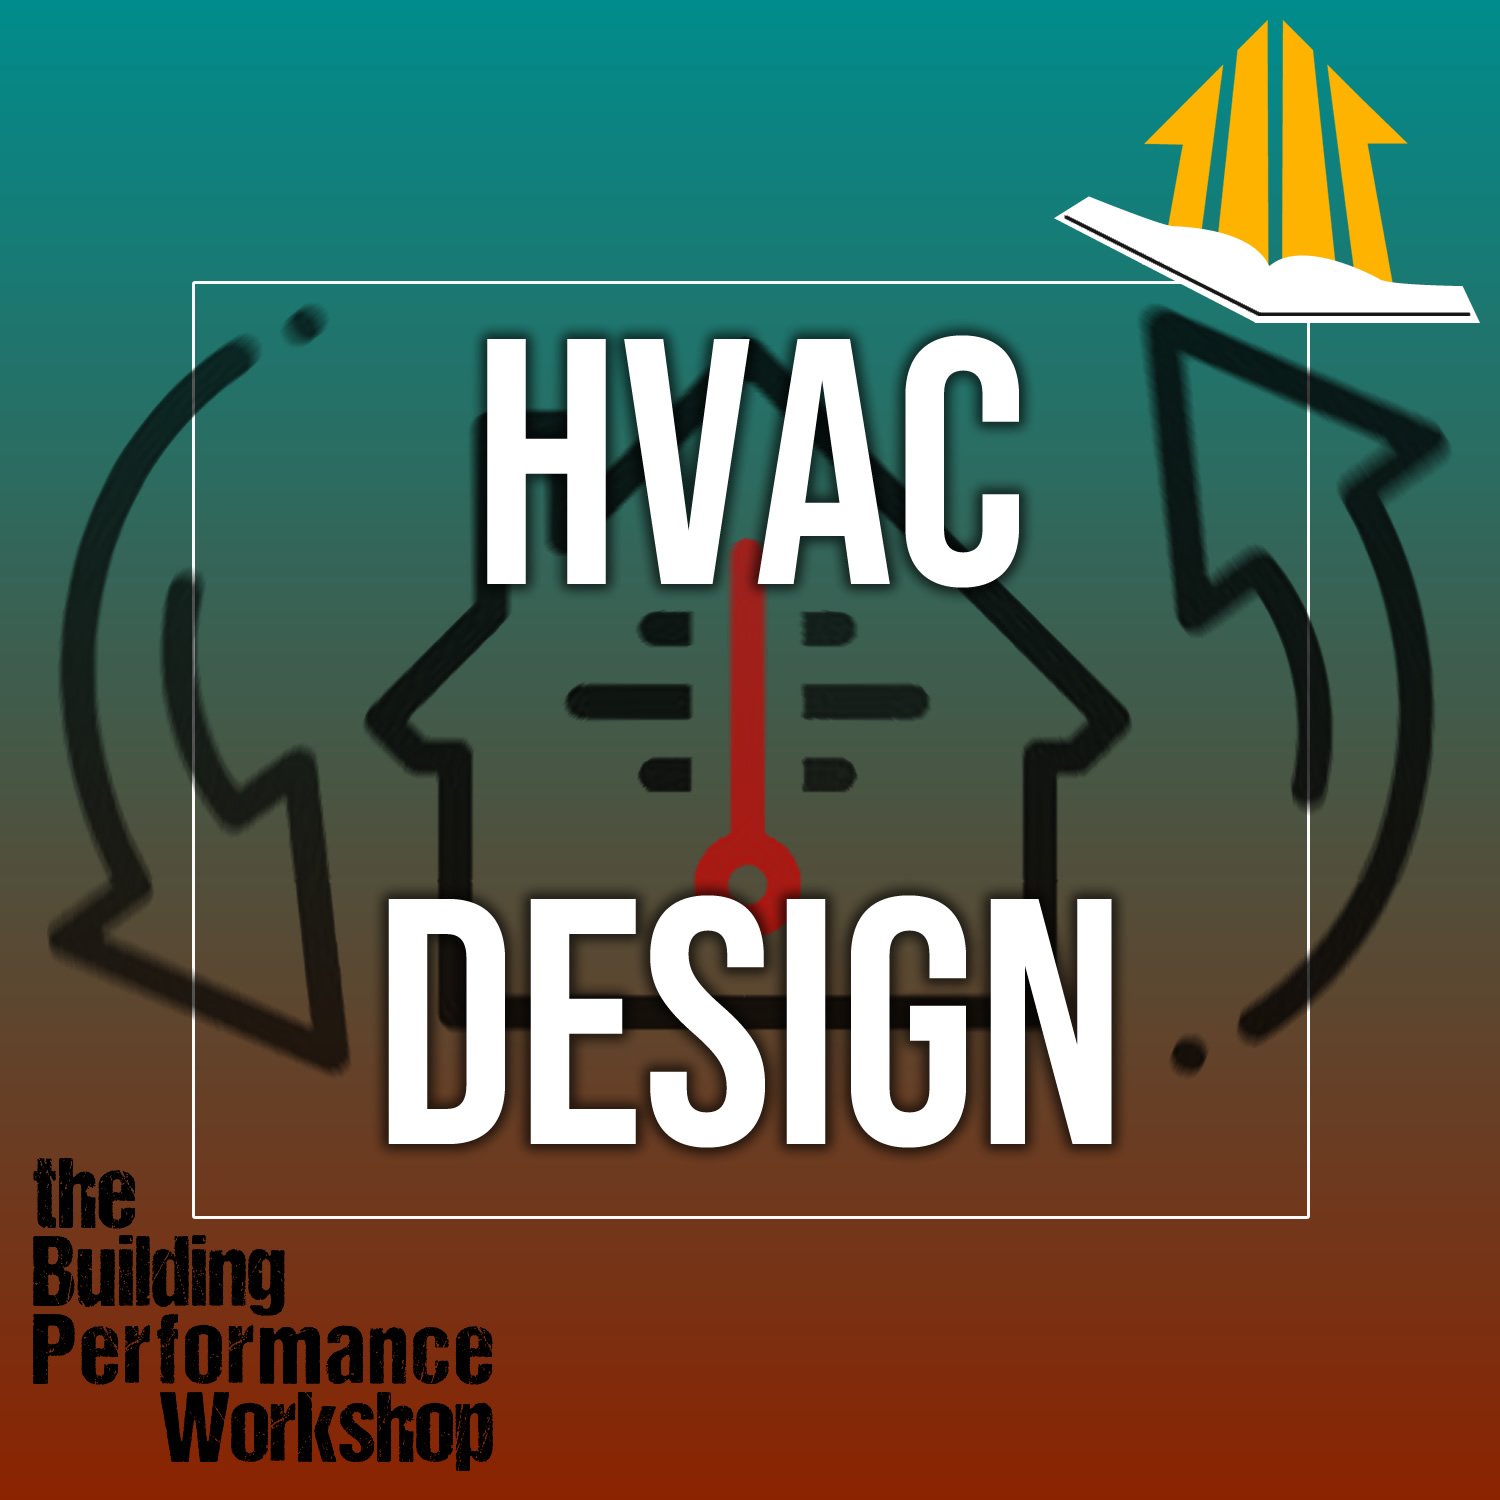 HVAC Design Course with Corbett Lunsford